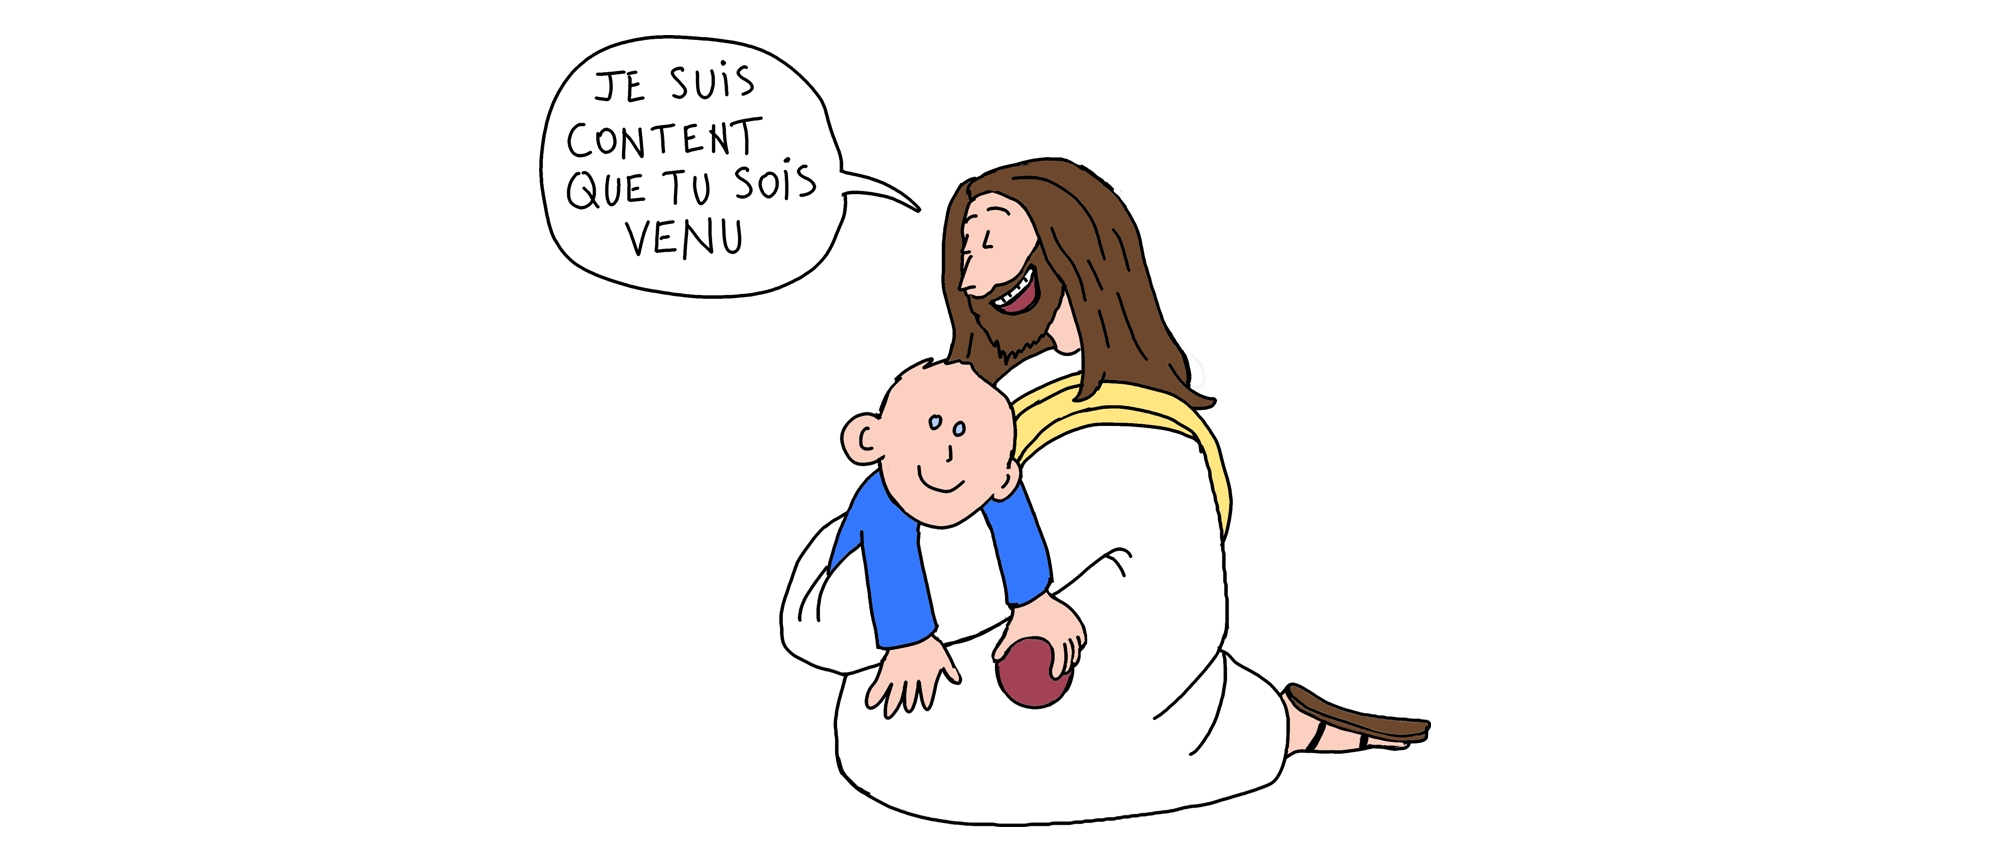 Jésus fait un câlin à un enfant